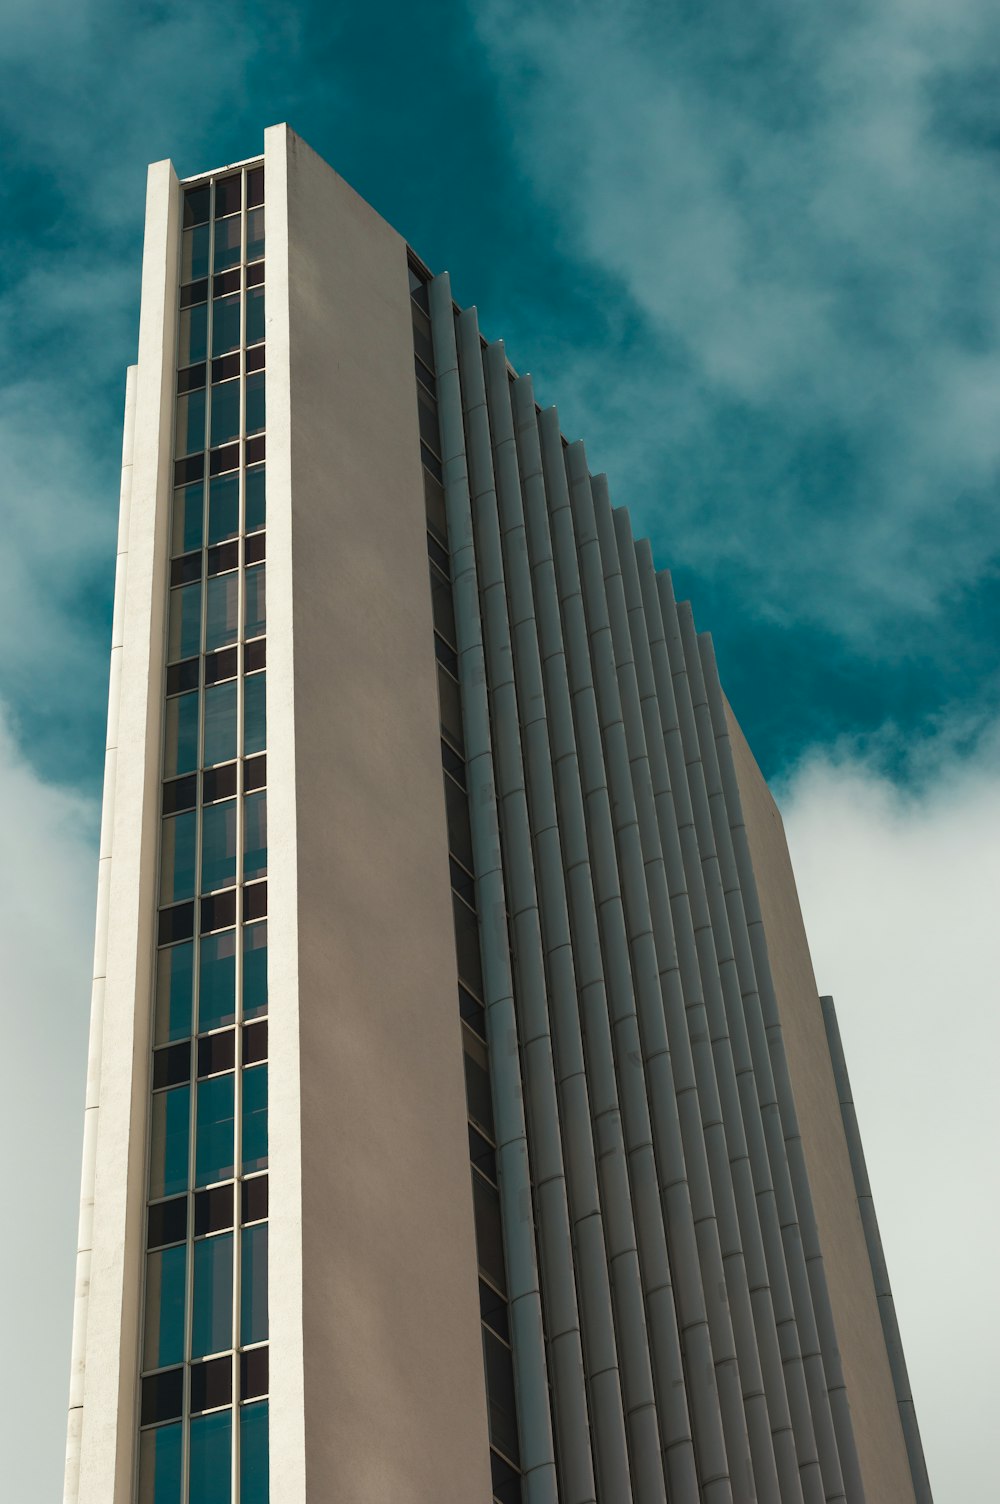 fotografia de baixo ângulo de um edifício de vários andares durante o dia